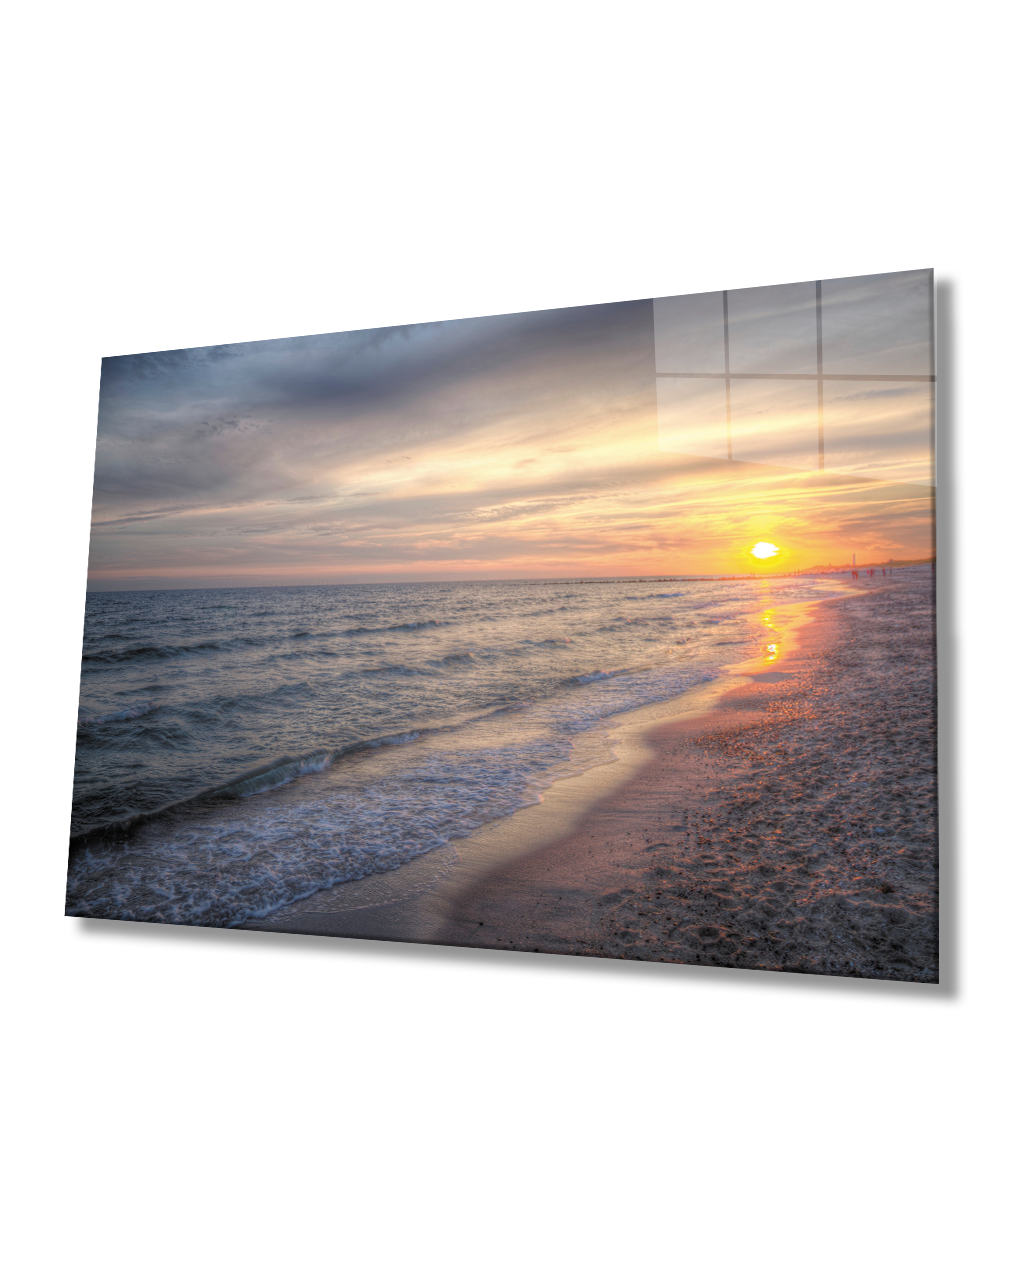 Denizde Gün Batımı Cam Tablo  4mm Dayanıklı Temperli Cam Sunset At Sea Glass Table 4mm Durable Tempered Glass